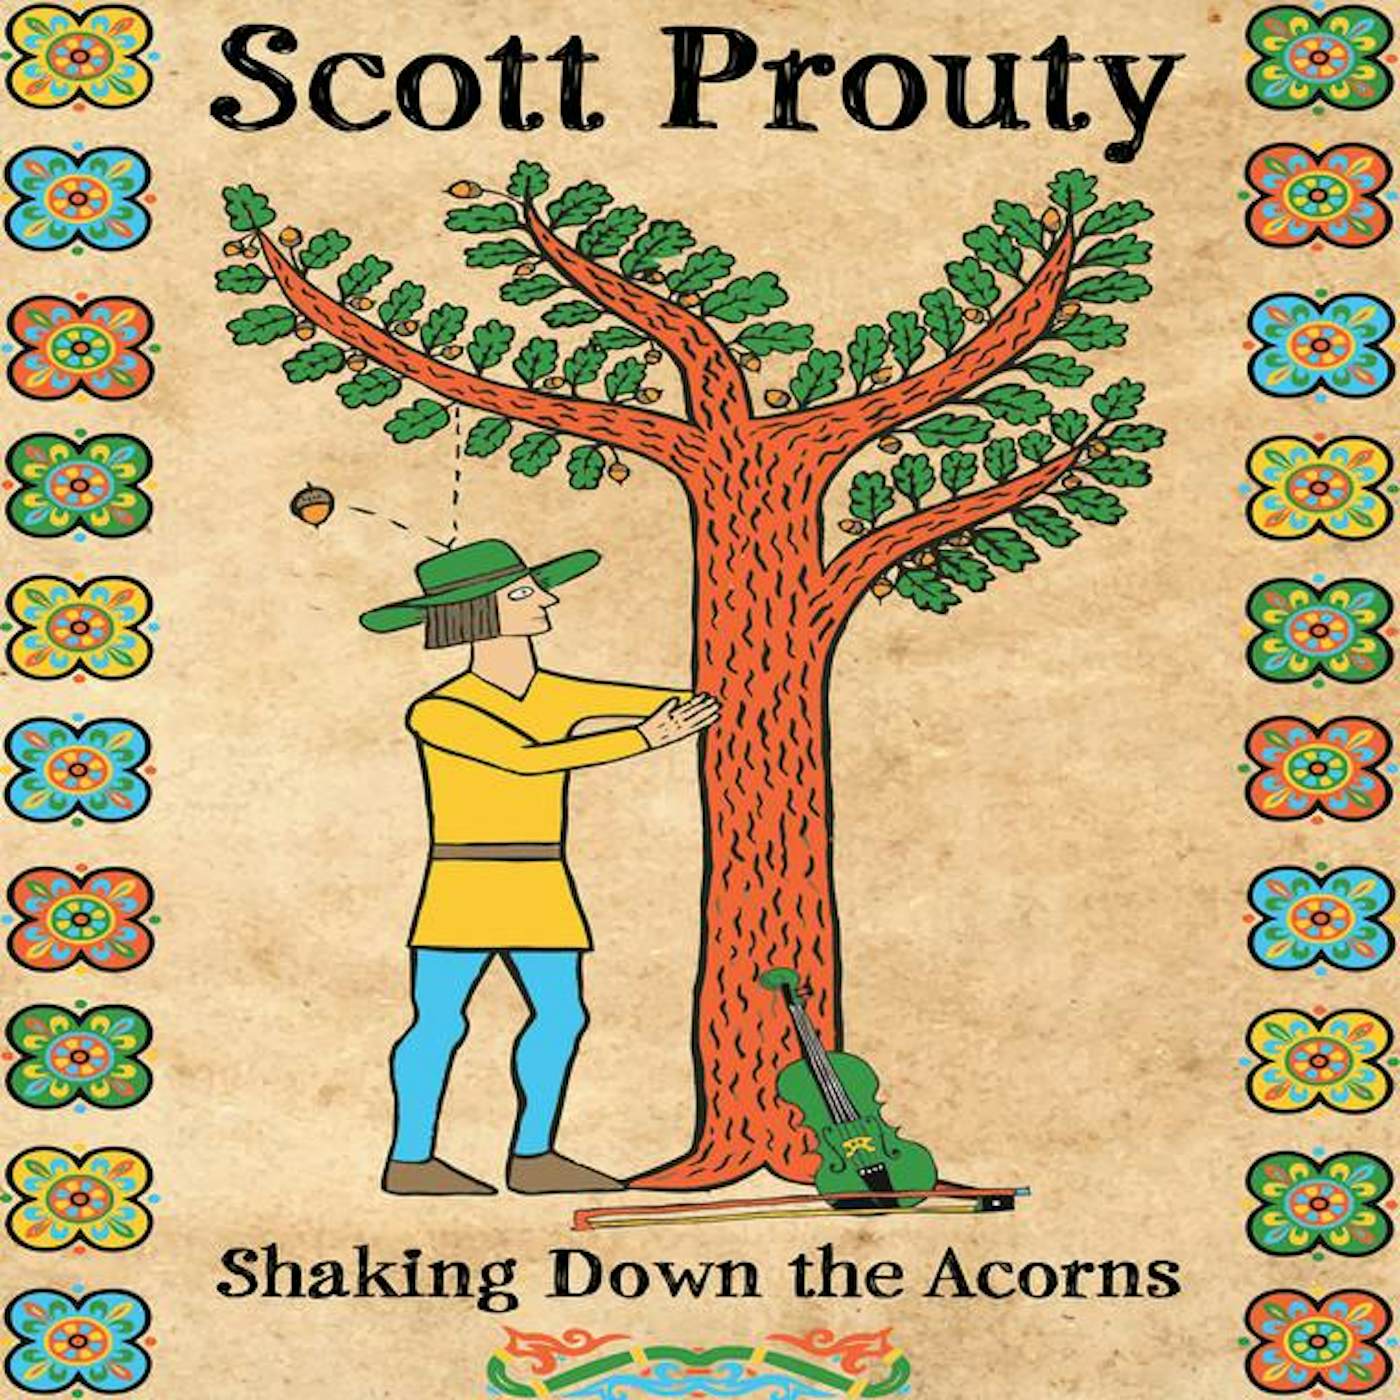 Scott Prouty